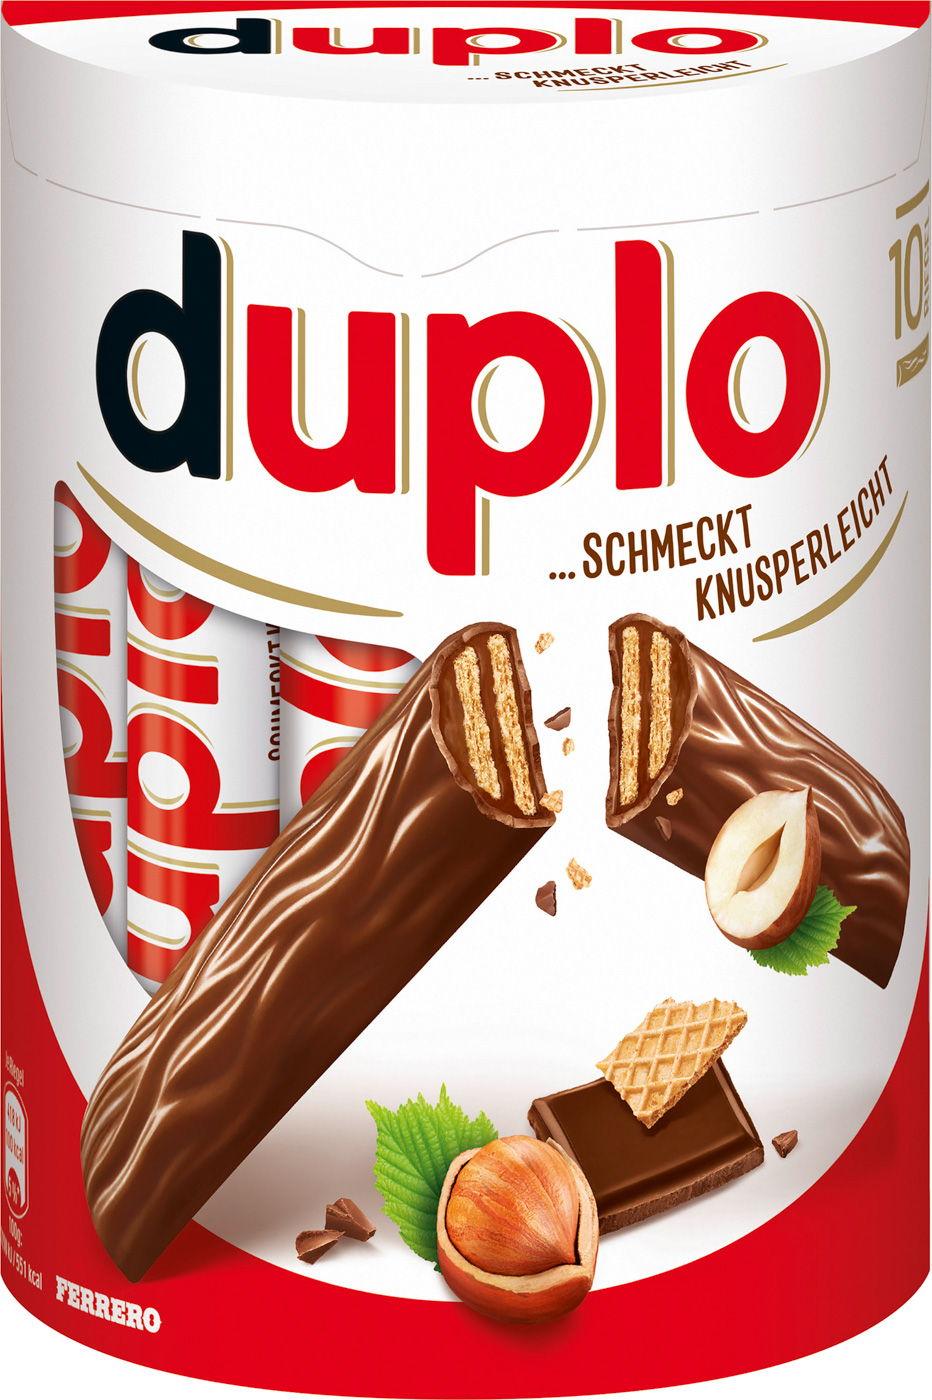 Ferrero Duplo 10er Pack 180G